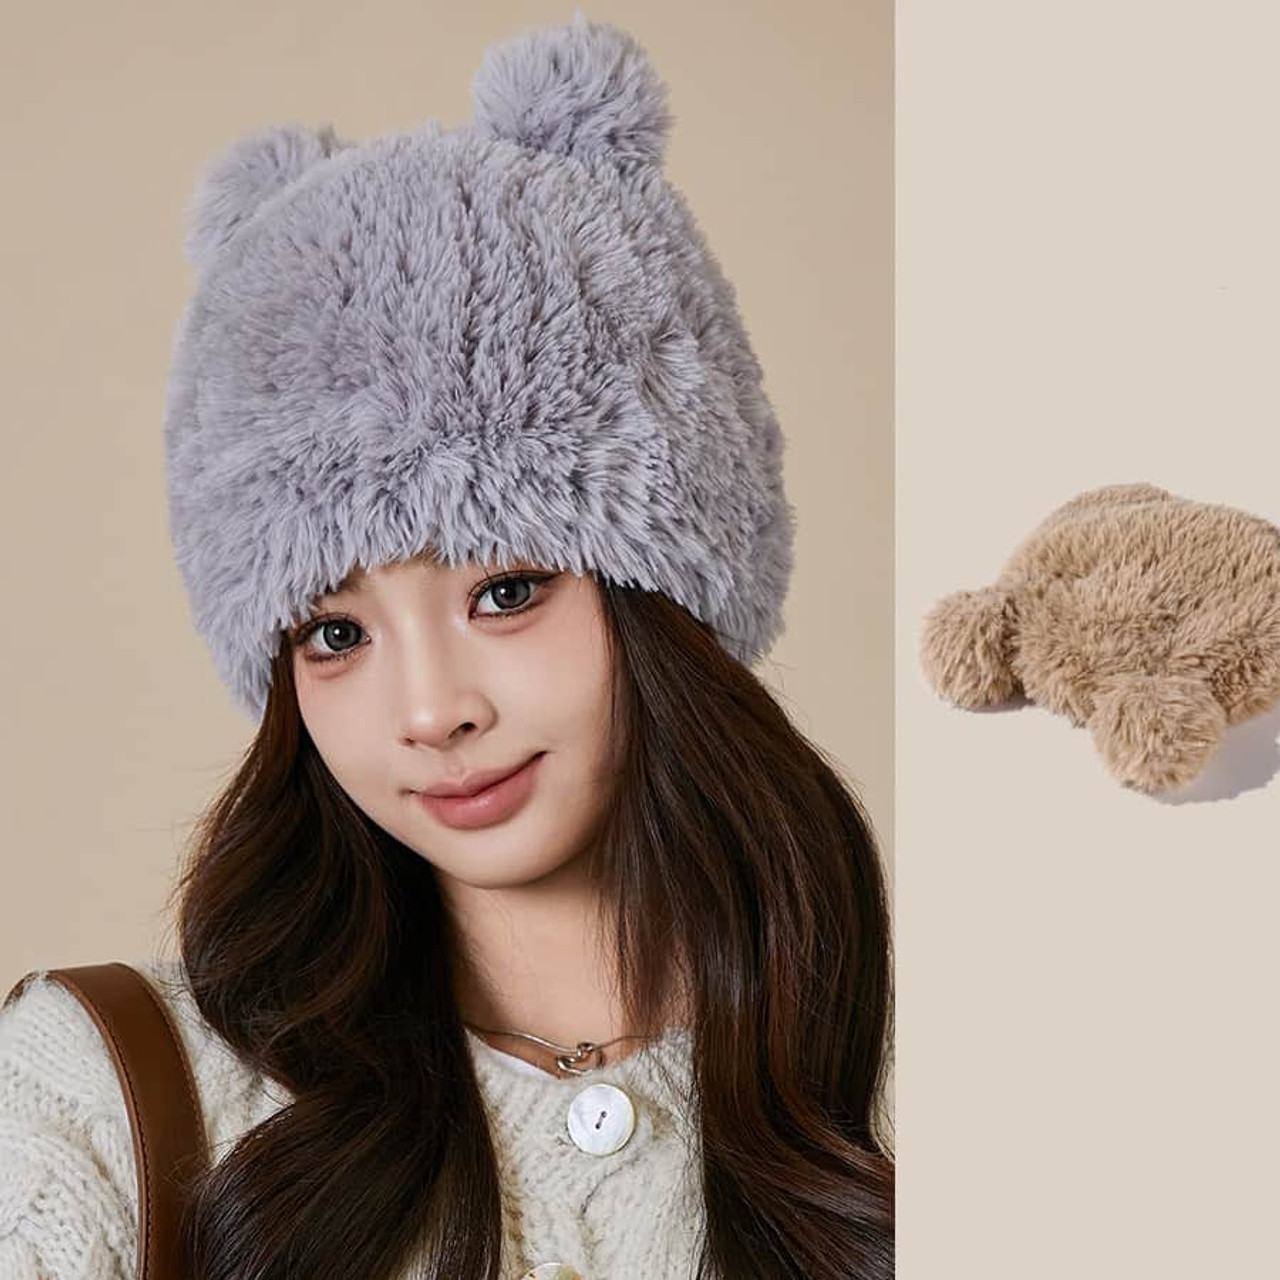 Warm Ear Protection Sweet Girl Style Woolen Cap